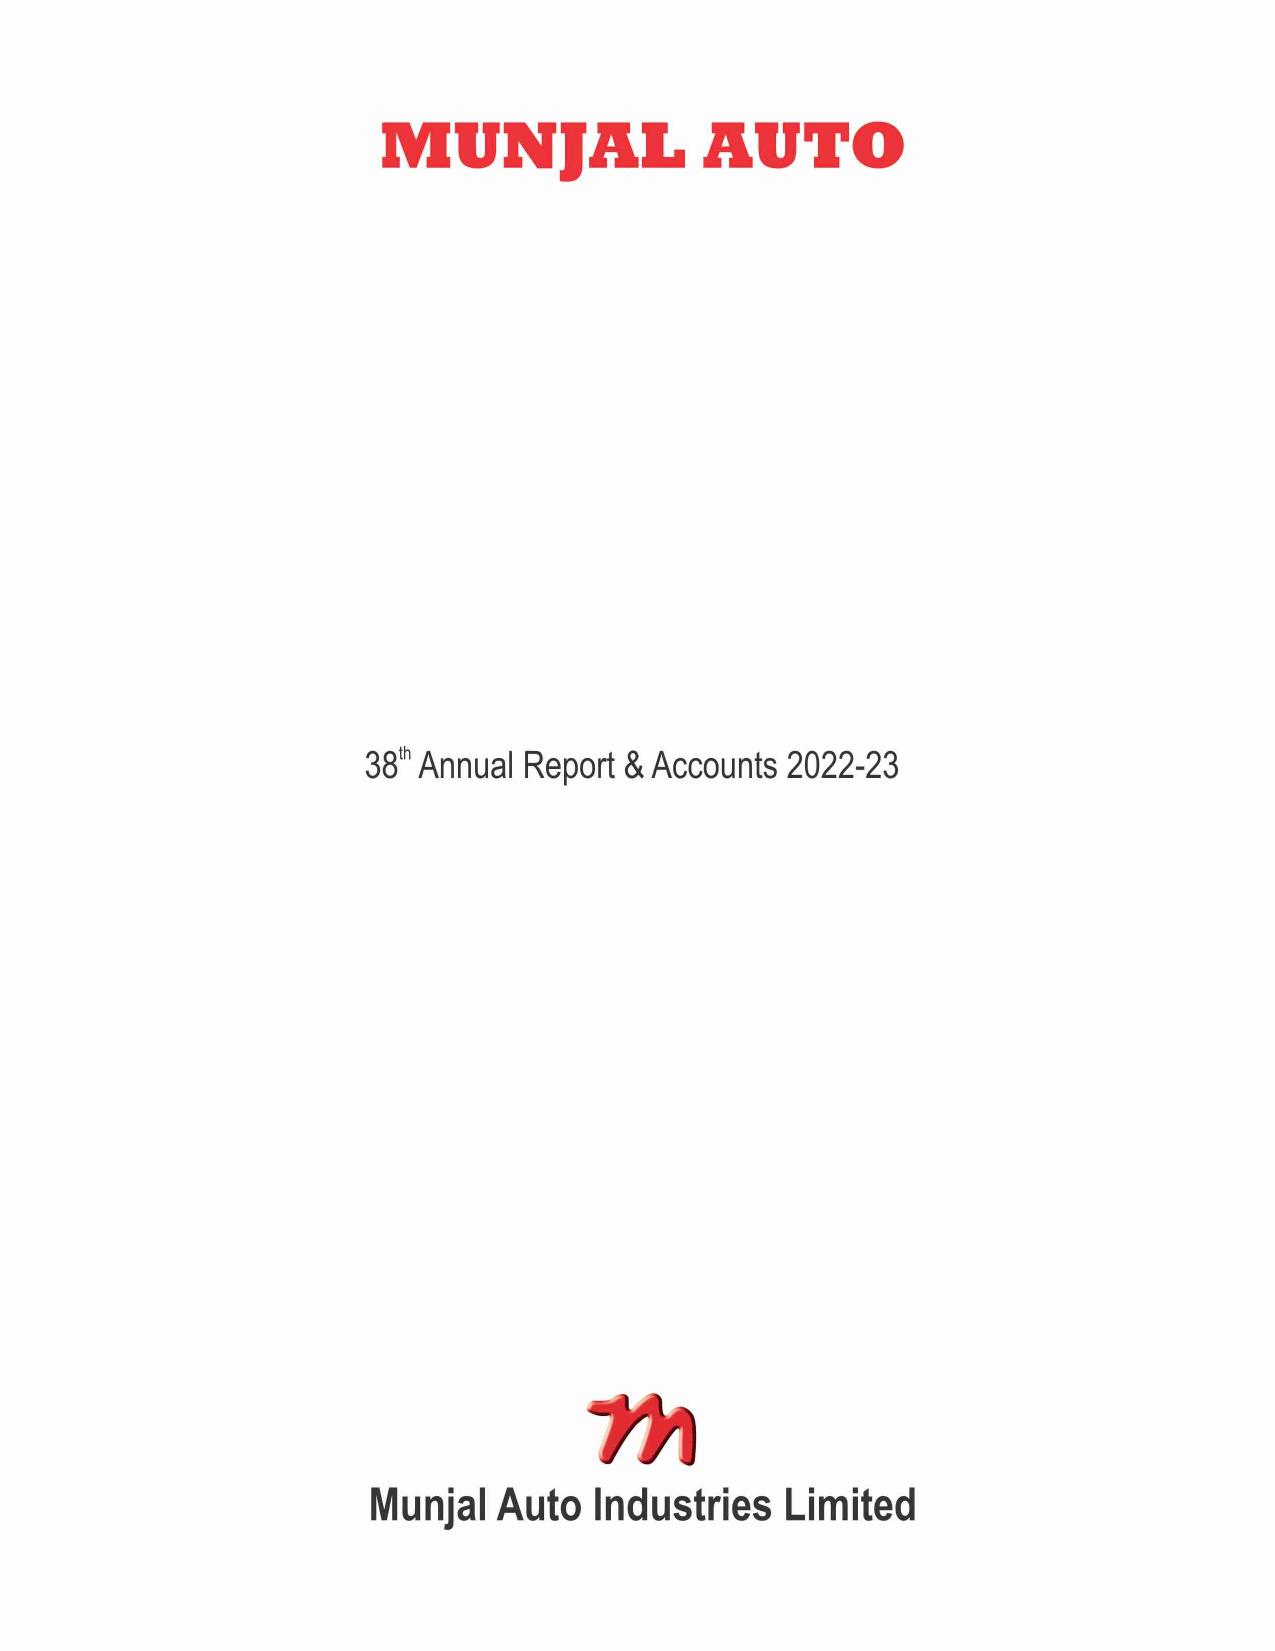 MUNJALAUTO 2023 Annual Report